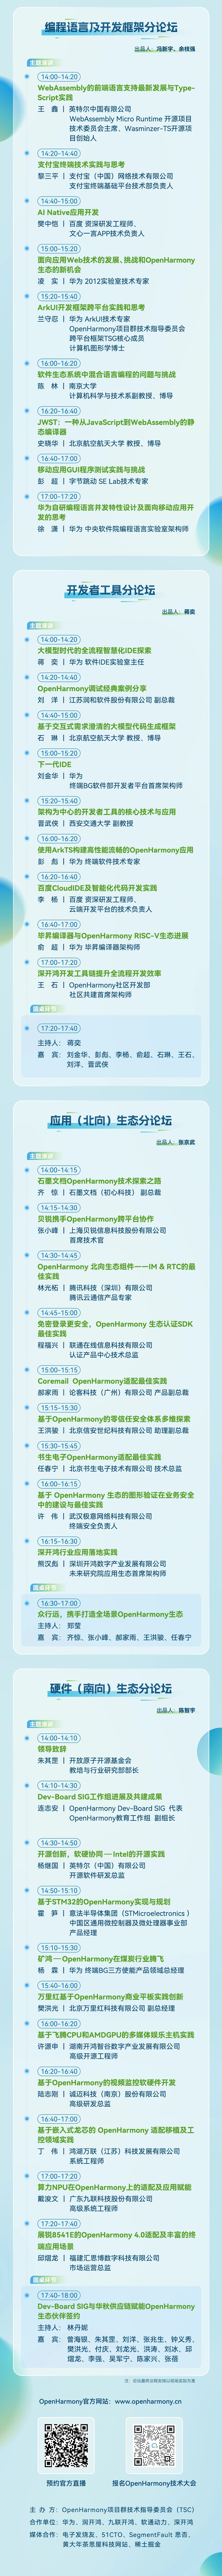 高能有料 | 第二届OpenHarmony技术大会议程速递-鸿蒙开发者社区